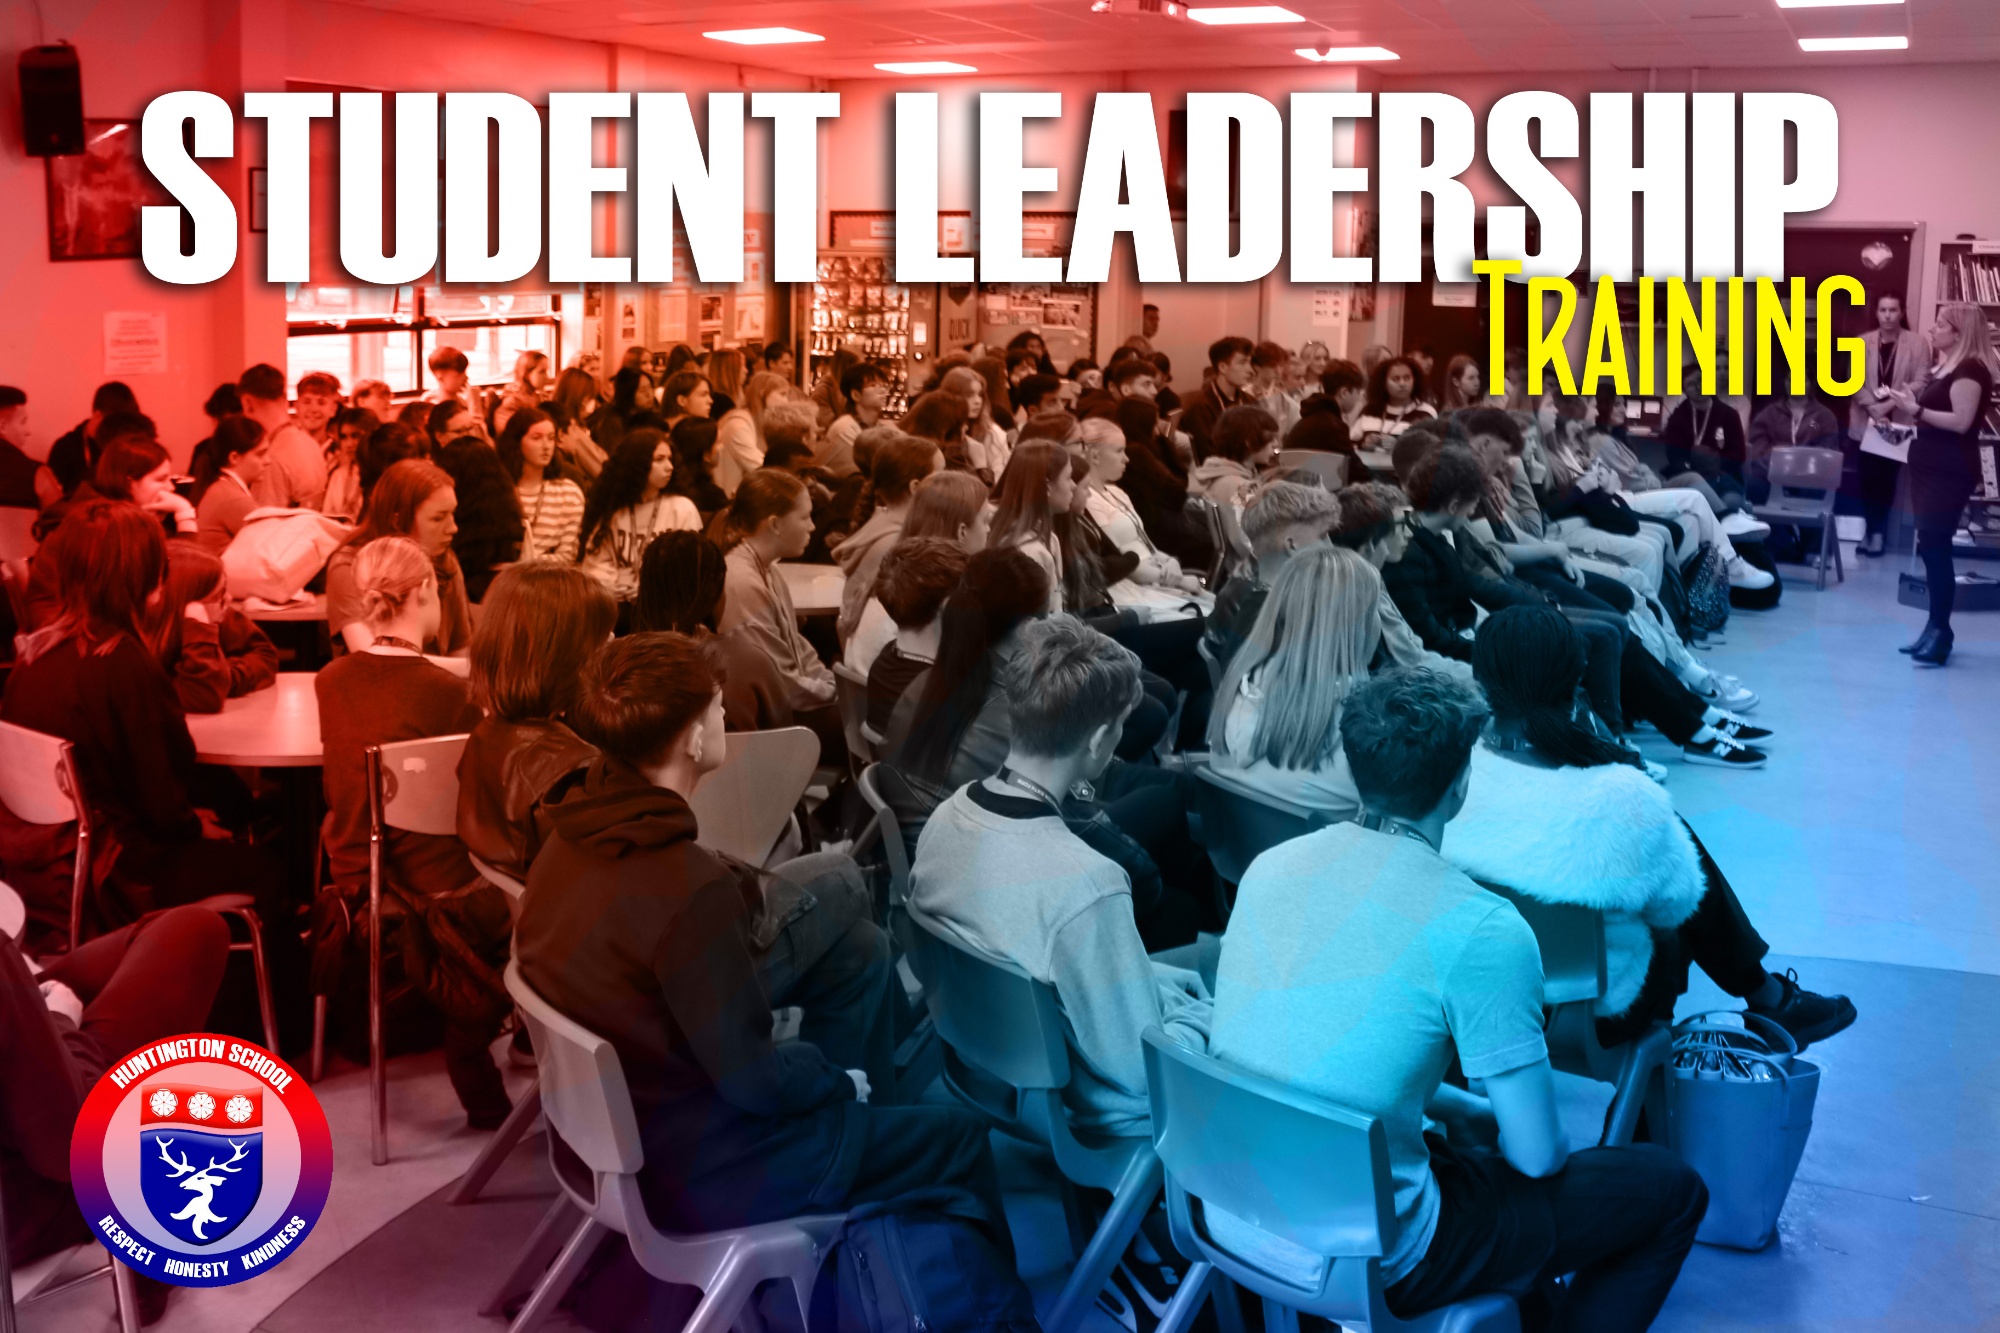 Student leadership image